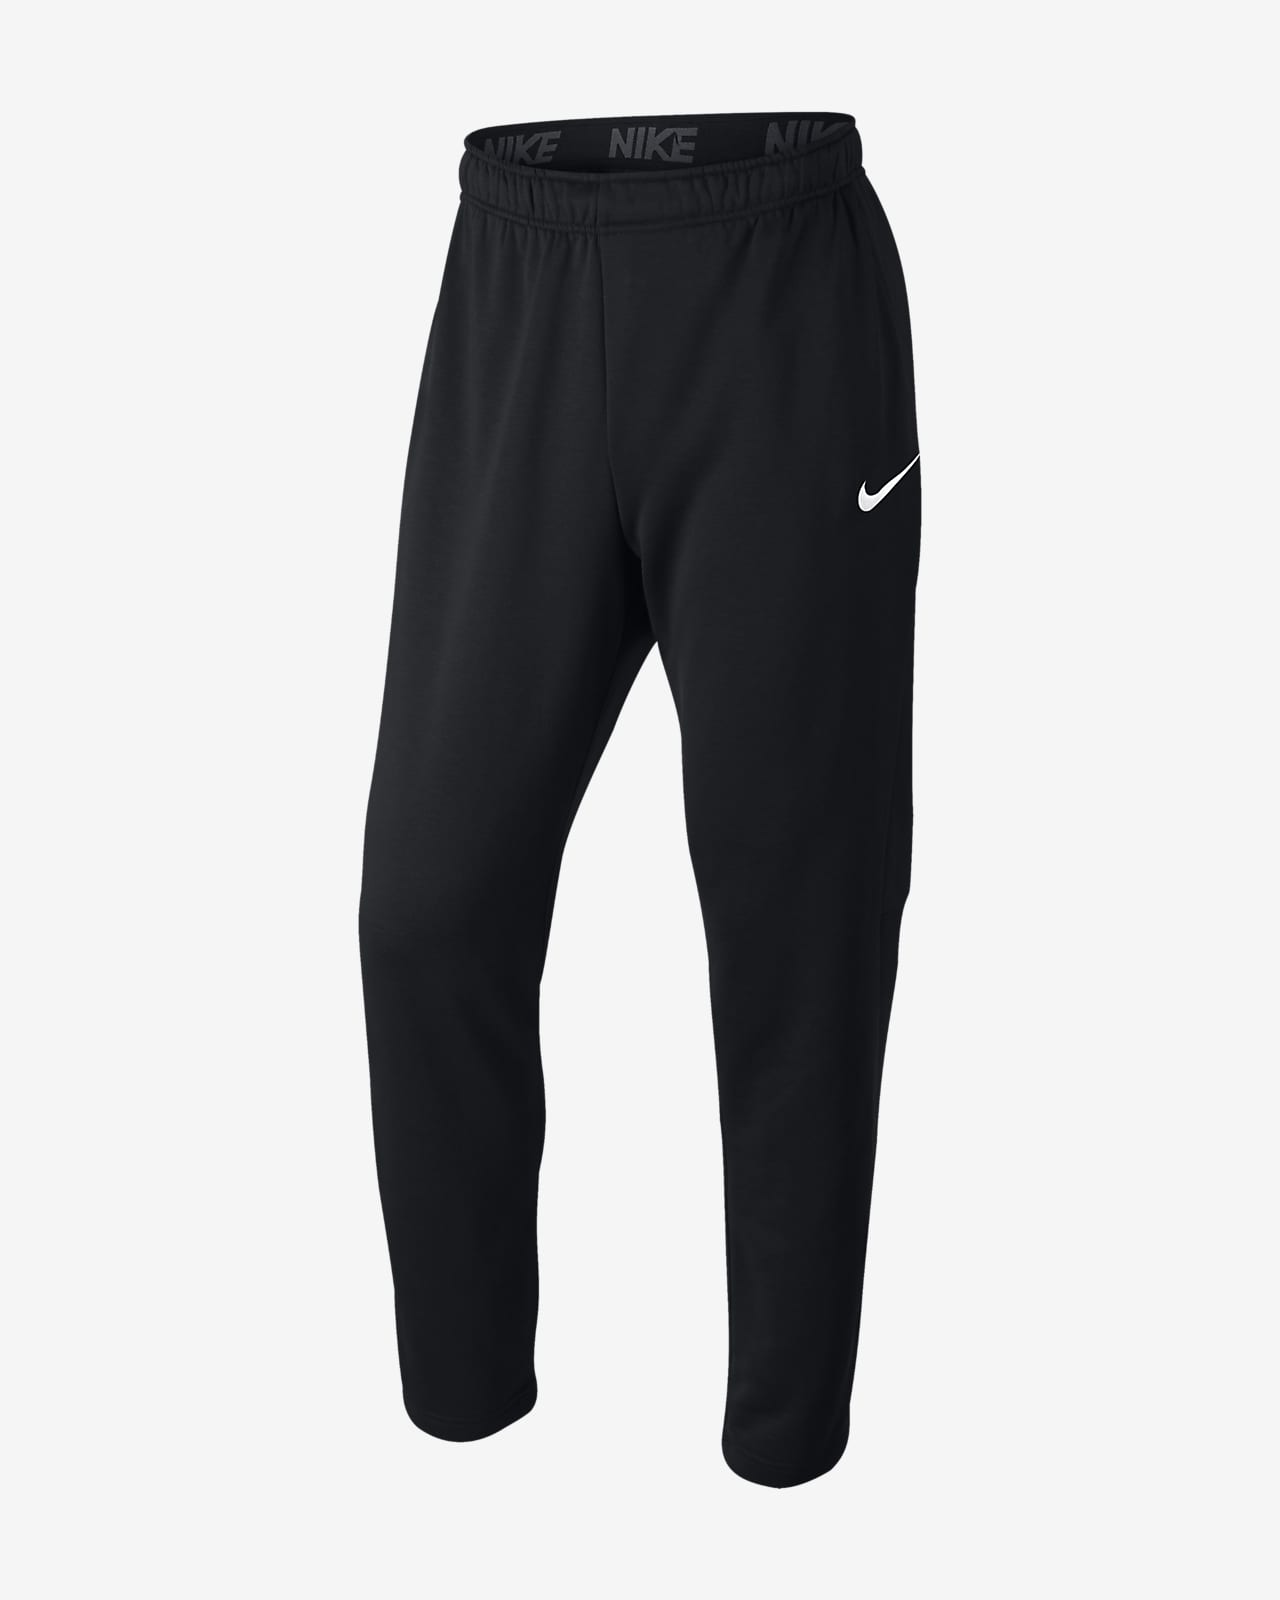 Nike Dri-FIT Men's Training Pants. Nike.com